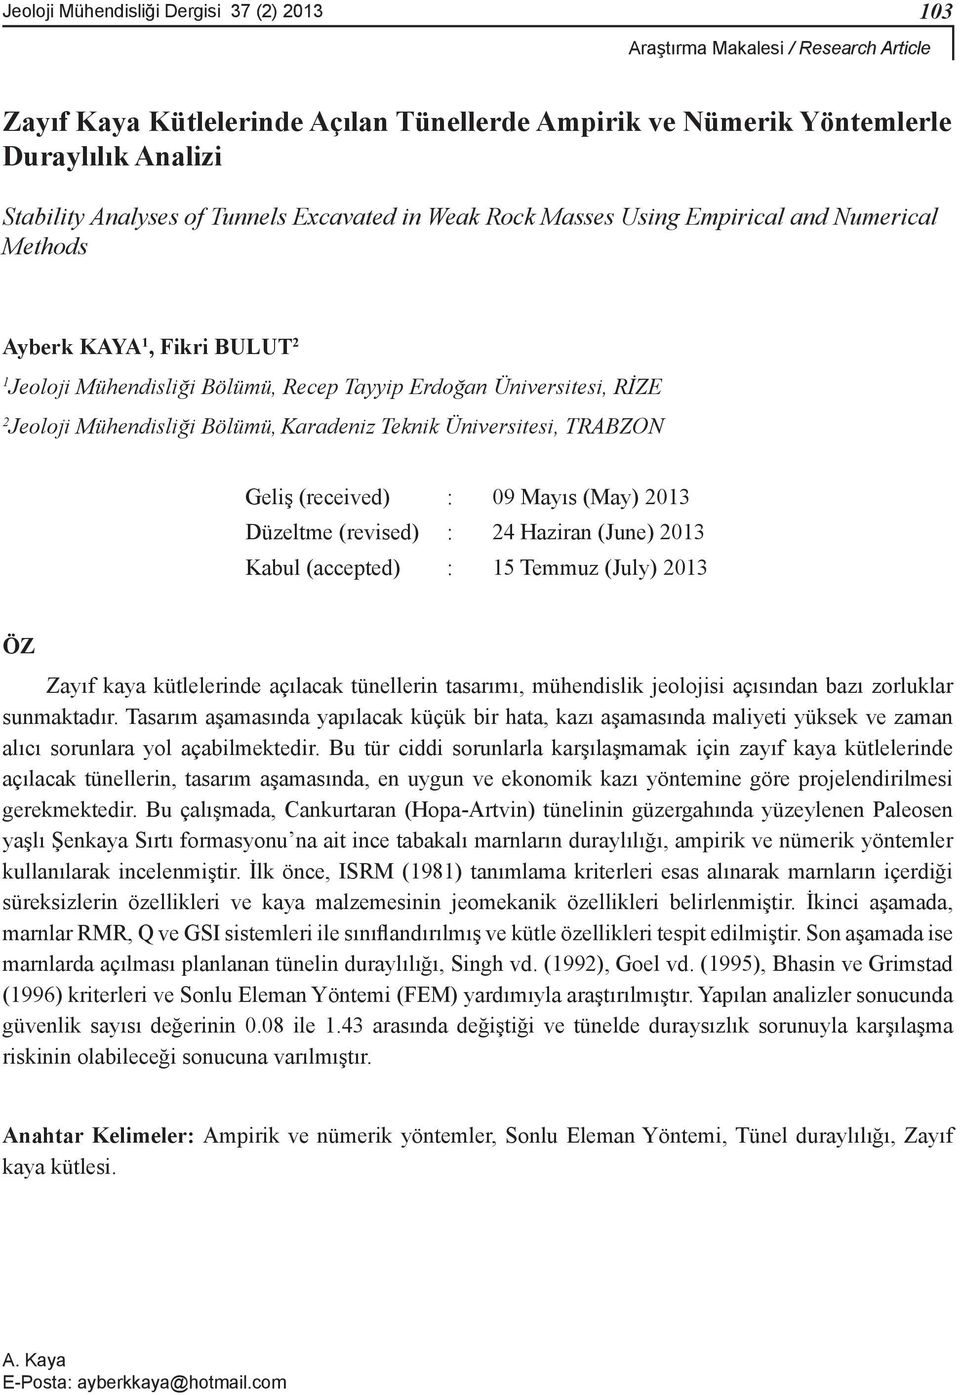 Bölümü, Karadeniz Teknik Üniversitesi, TRABZON Geliş (received) : 09 Mayıs (May) 2013 Düzeltme (revised) : 24 Haziran (June) 2013 Kabul (accepted) : 15 Temmuz (July) 2013 ÖZ Zayıf kaya kütlelerinde